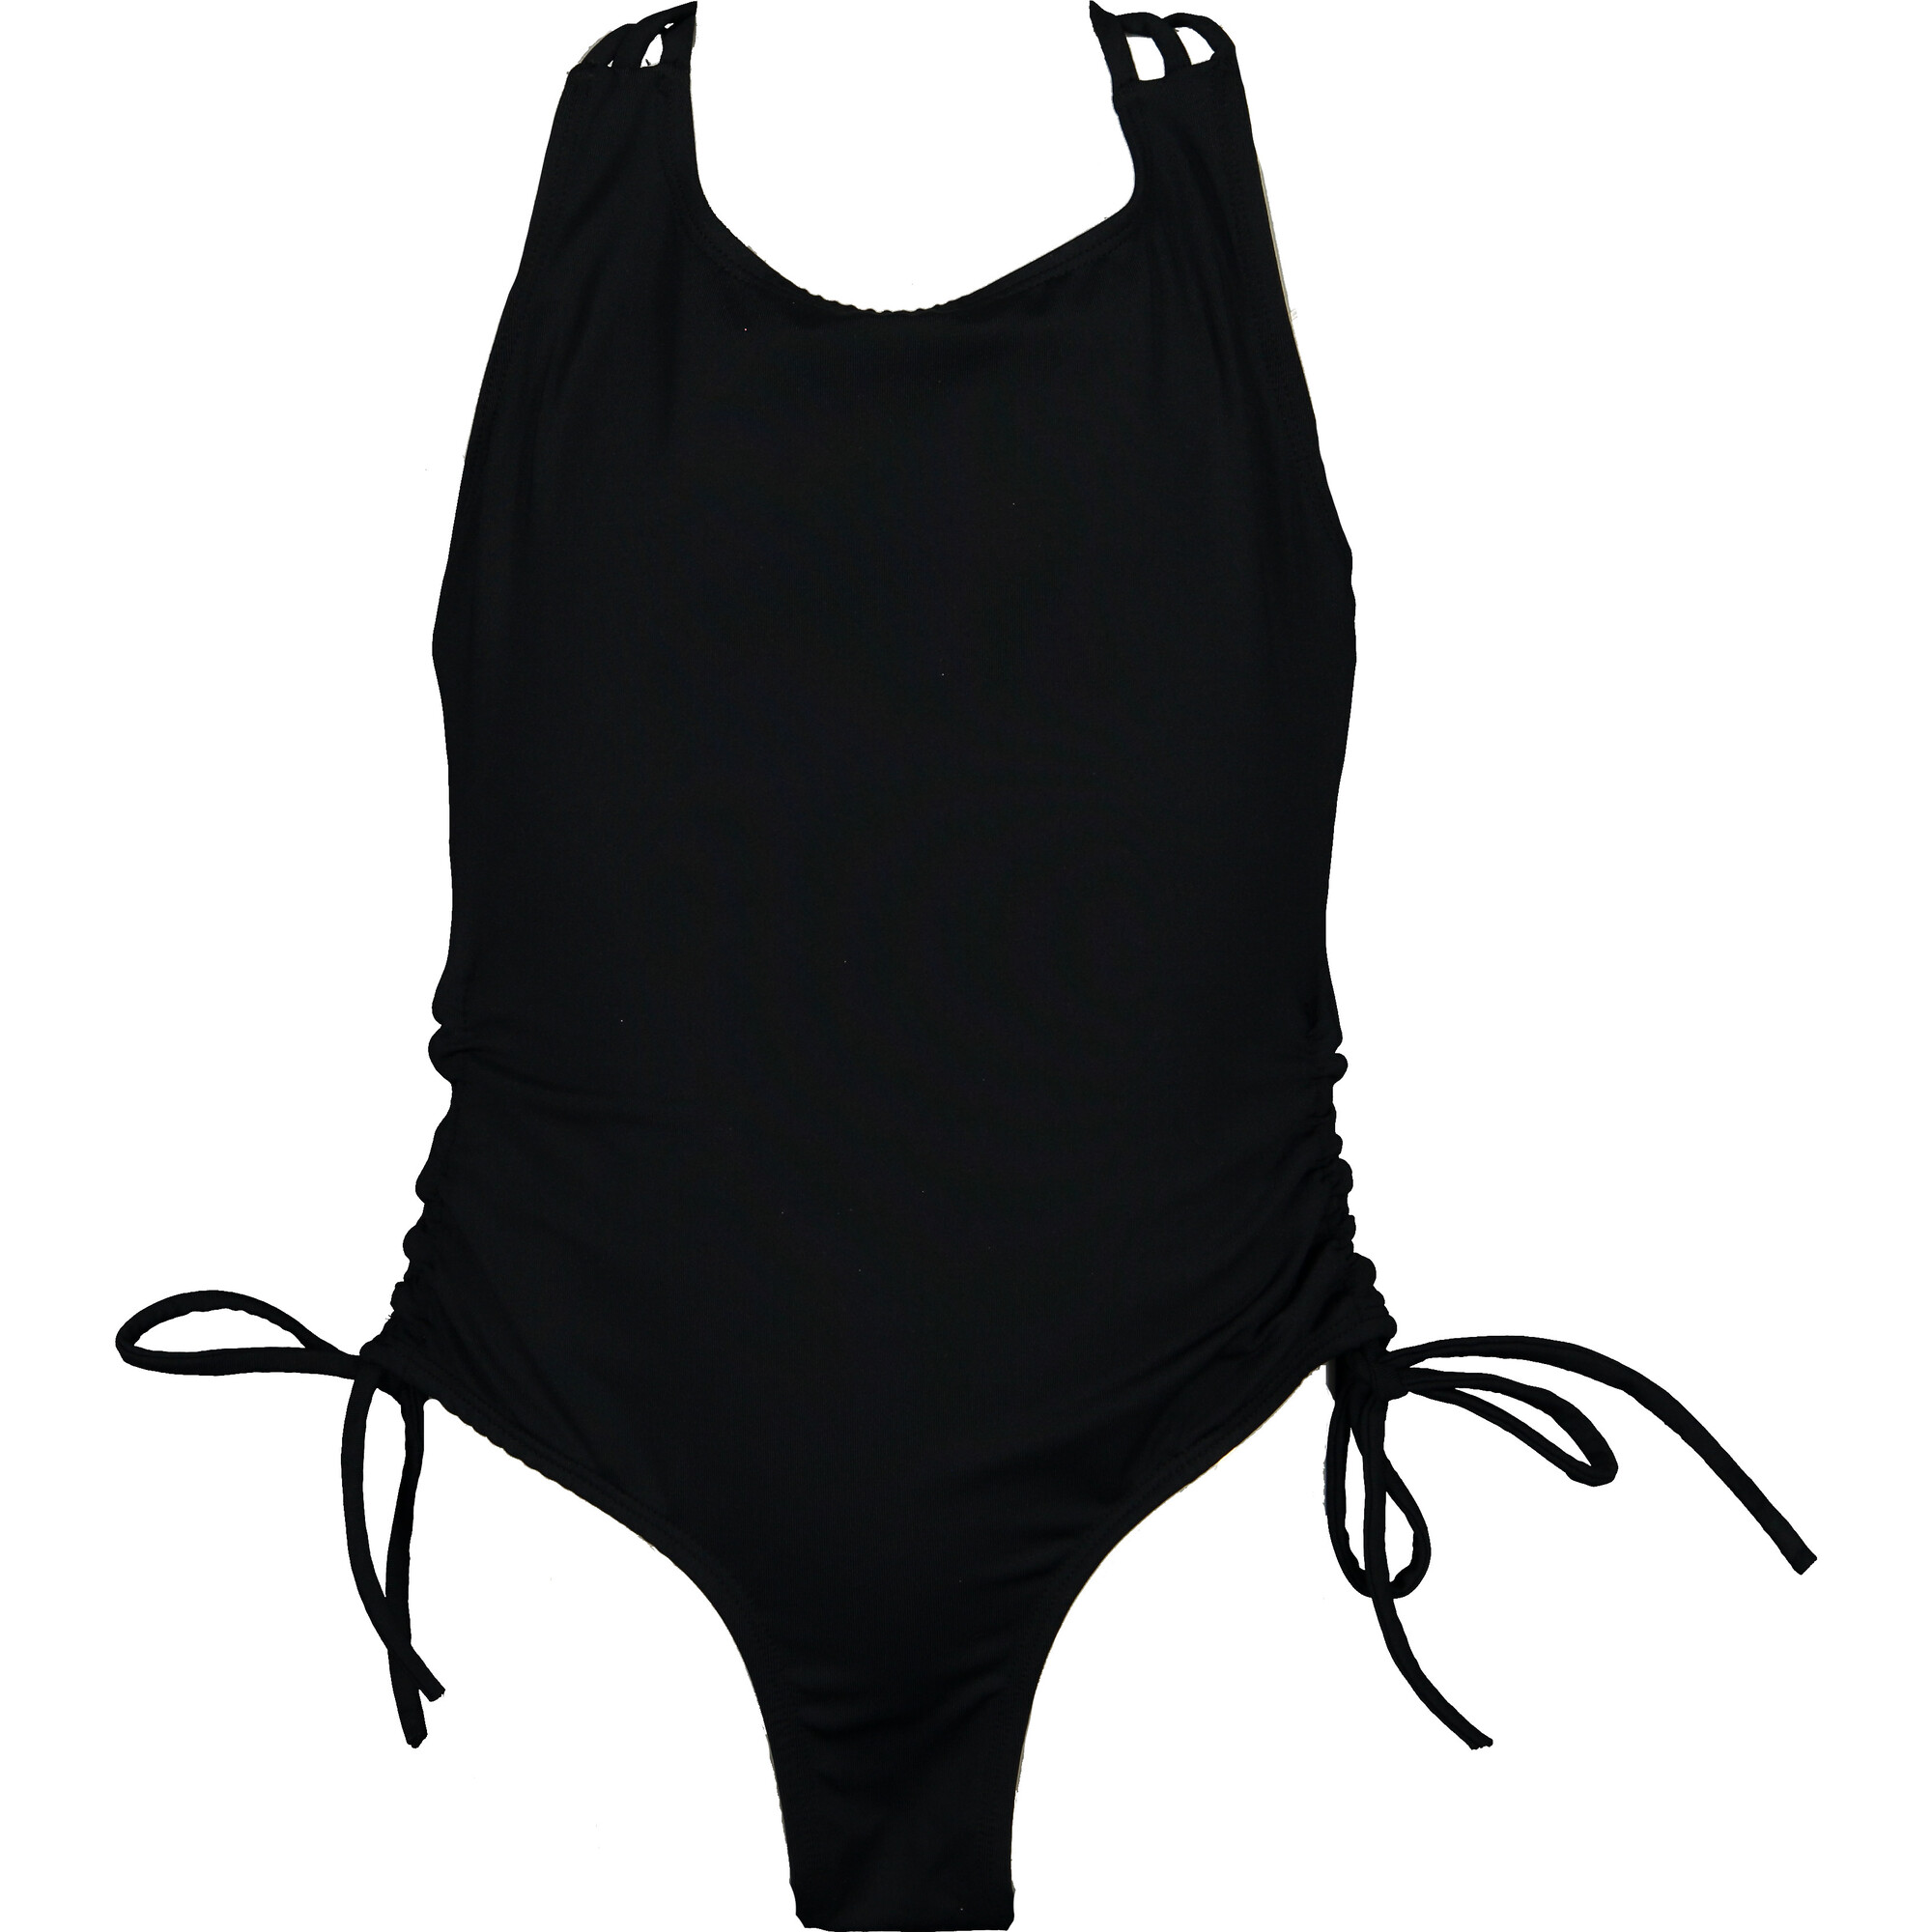 Waterfall One Piece Swimsuit (Black) - ShopperBoard